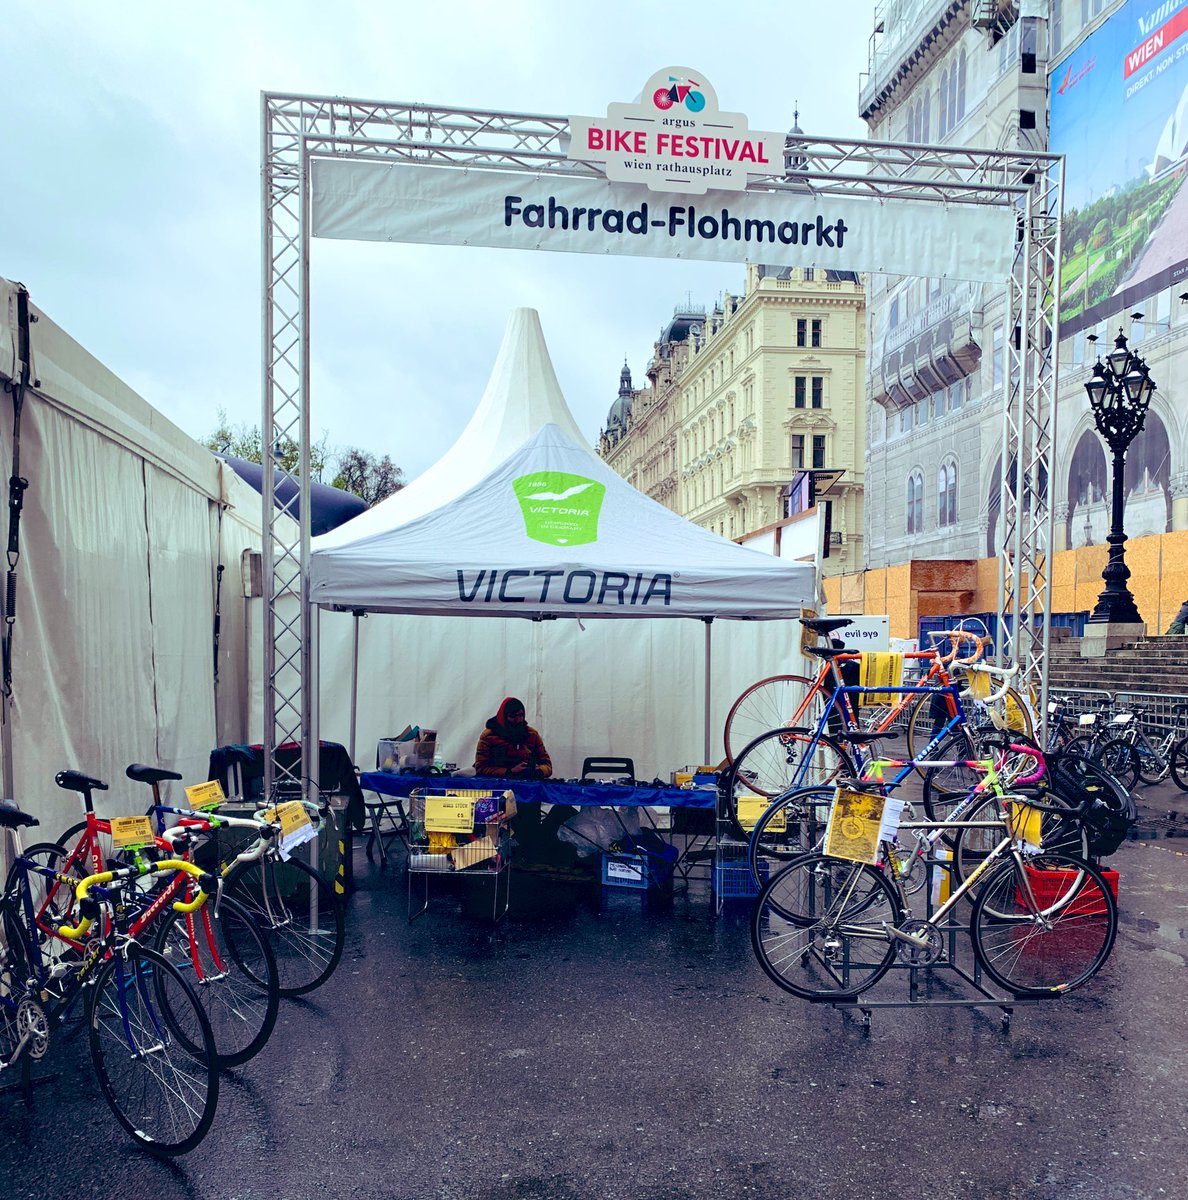 Fahrrad-Flohmarkt 🚴 Bike Festival in Wien 🇦🇹 #vintagebike 😍

#mybikehappydas

#radliebewien #fahrradwien